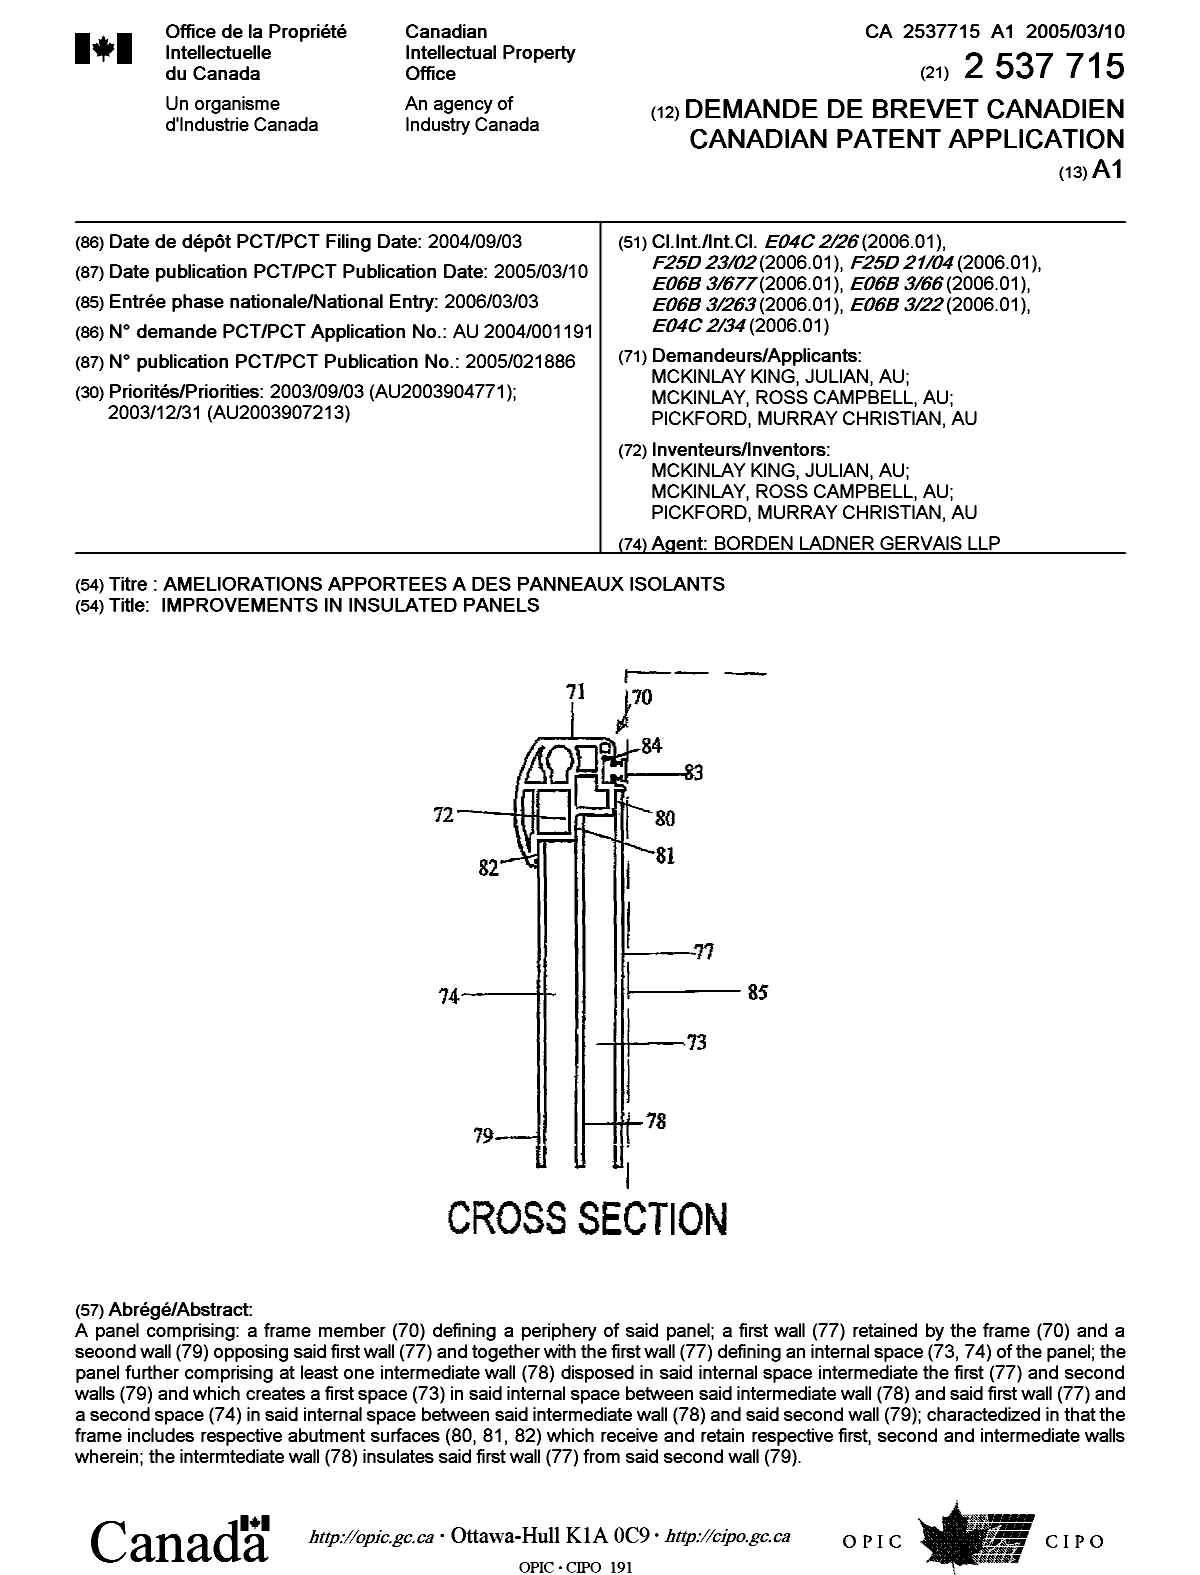 Document de brevet canadien 2537715. Page couverture 20060511. Image 1 de 1